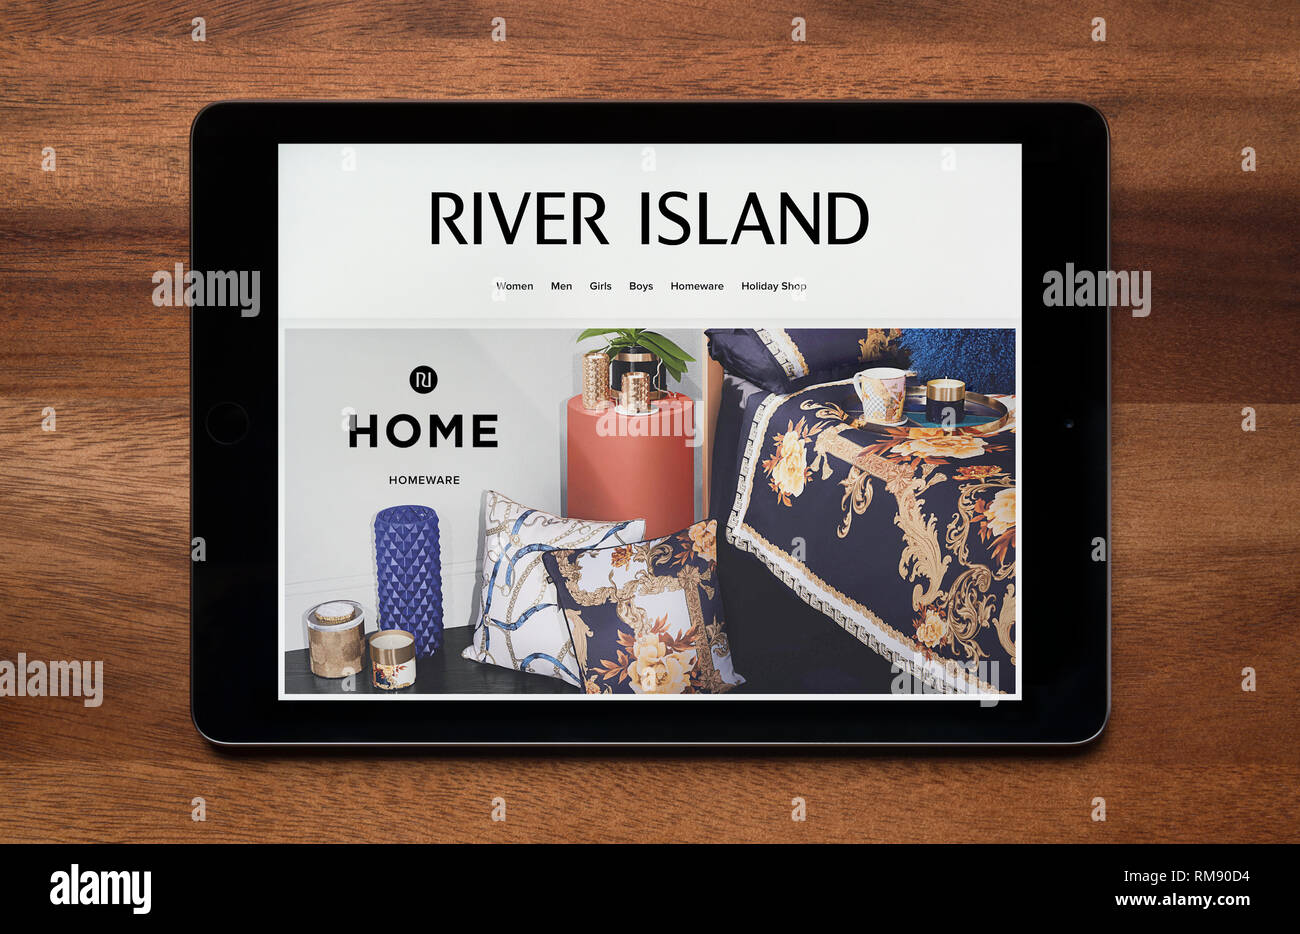 El sitio web de River Island es visto en un iPad, que descansa sobre una mesa de madera (uso Editorial solamente). Foto de stock